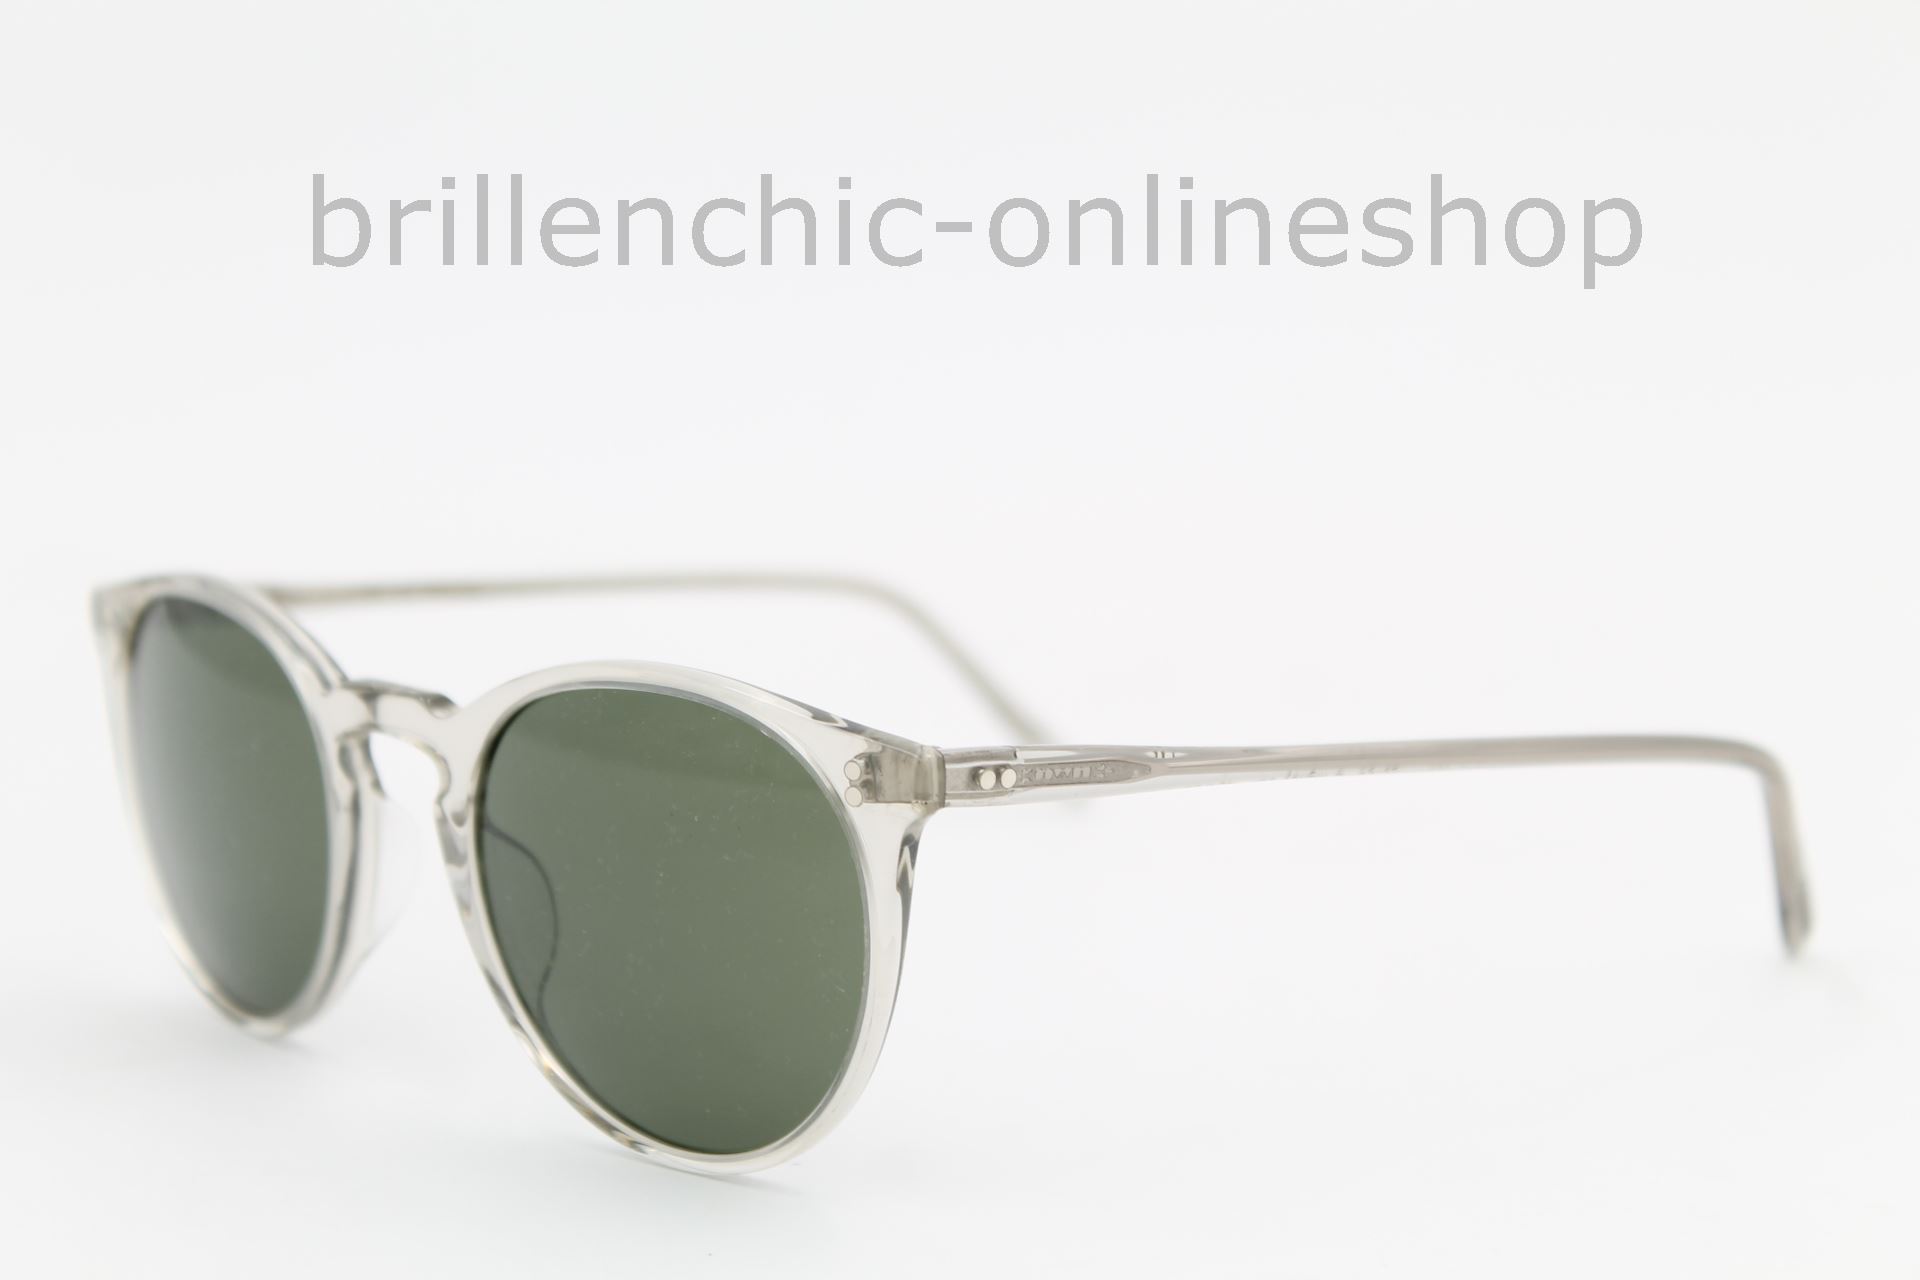 Brillenchic - onlineshop Berlin Ihr starker Partner für exklusive Brillen  online kaufen/OLIVER PEOPLES O'MALLEY SUN OV 5183S 5183 1669/52 exklusiv im  Brillenchic-Onlineshop